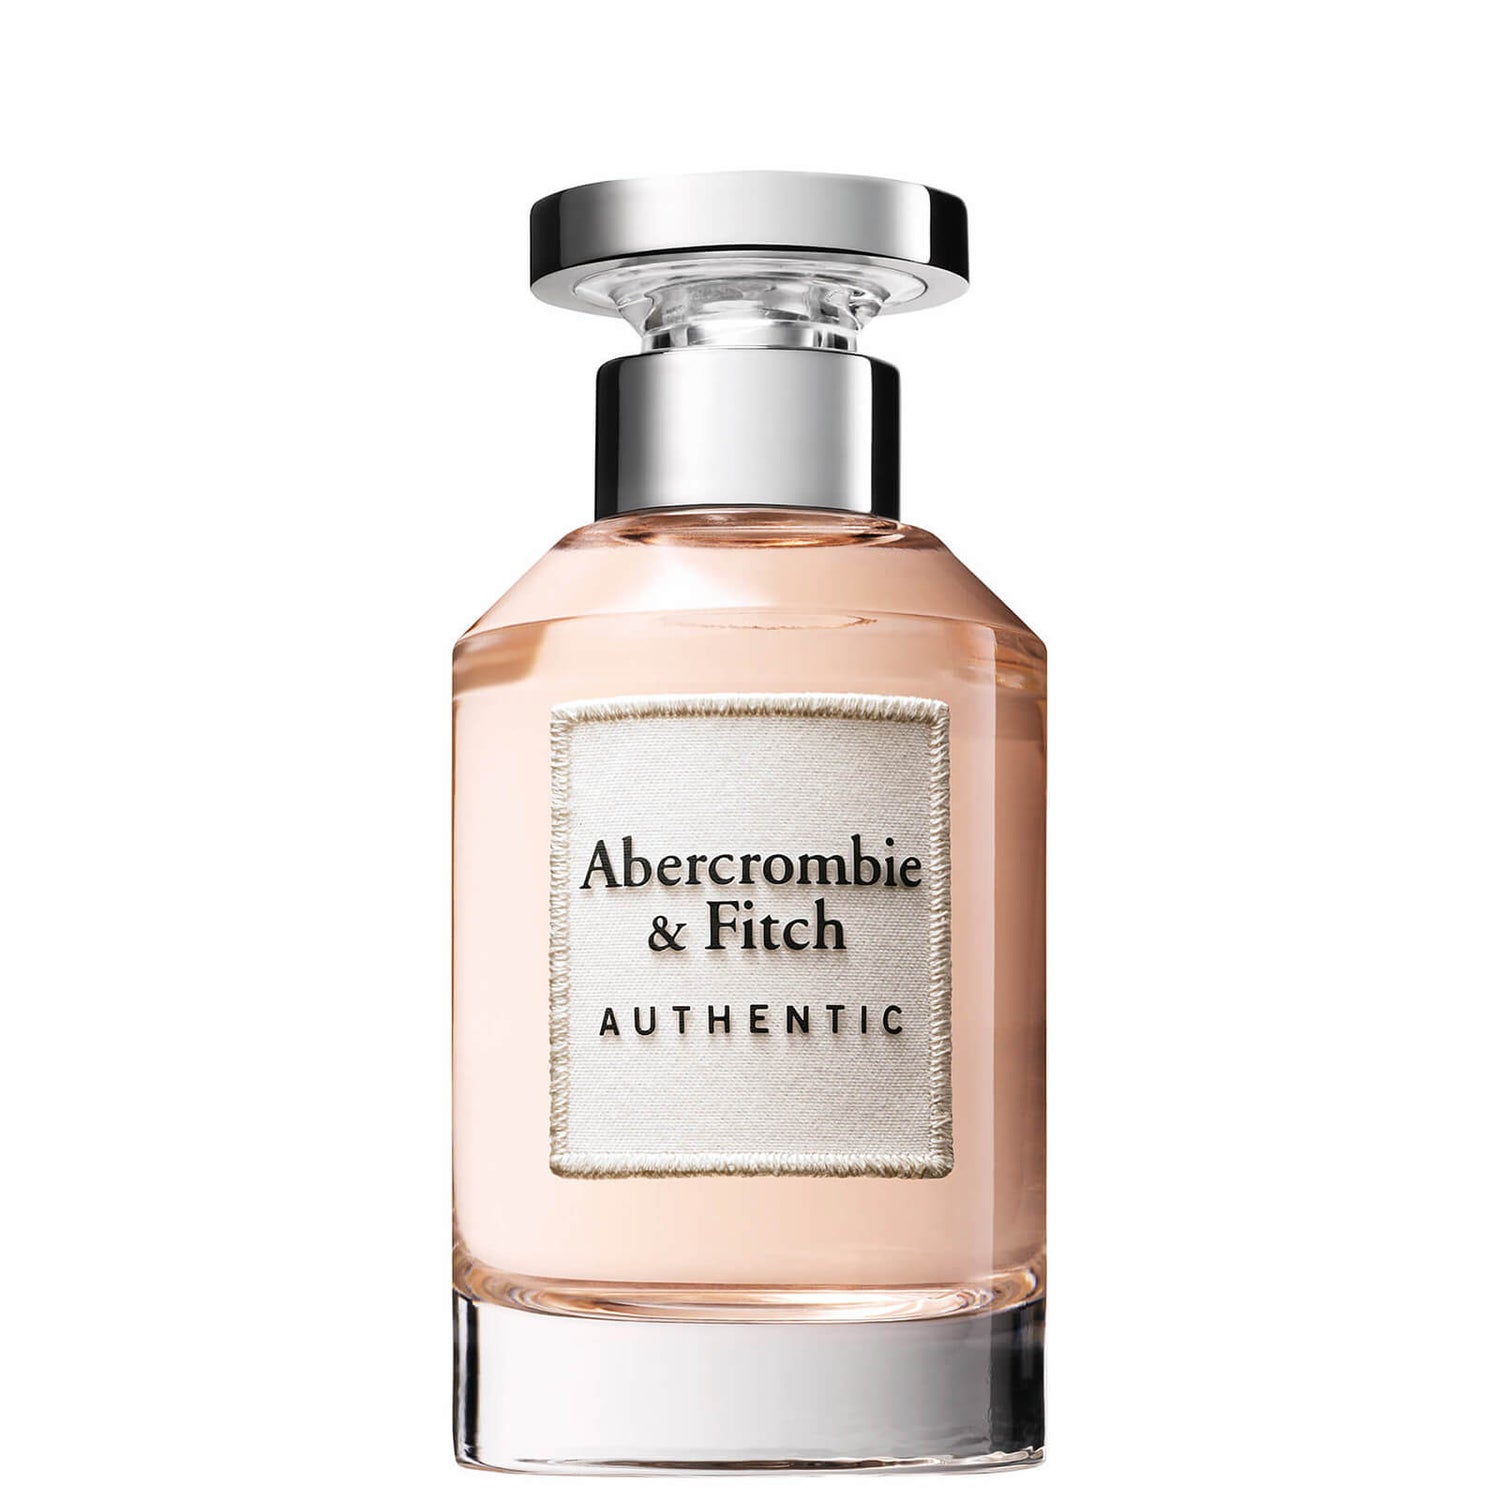 Abercrombie & Fitch Authentic for Women Eau de Parfum 100ml - Entrega ...